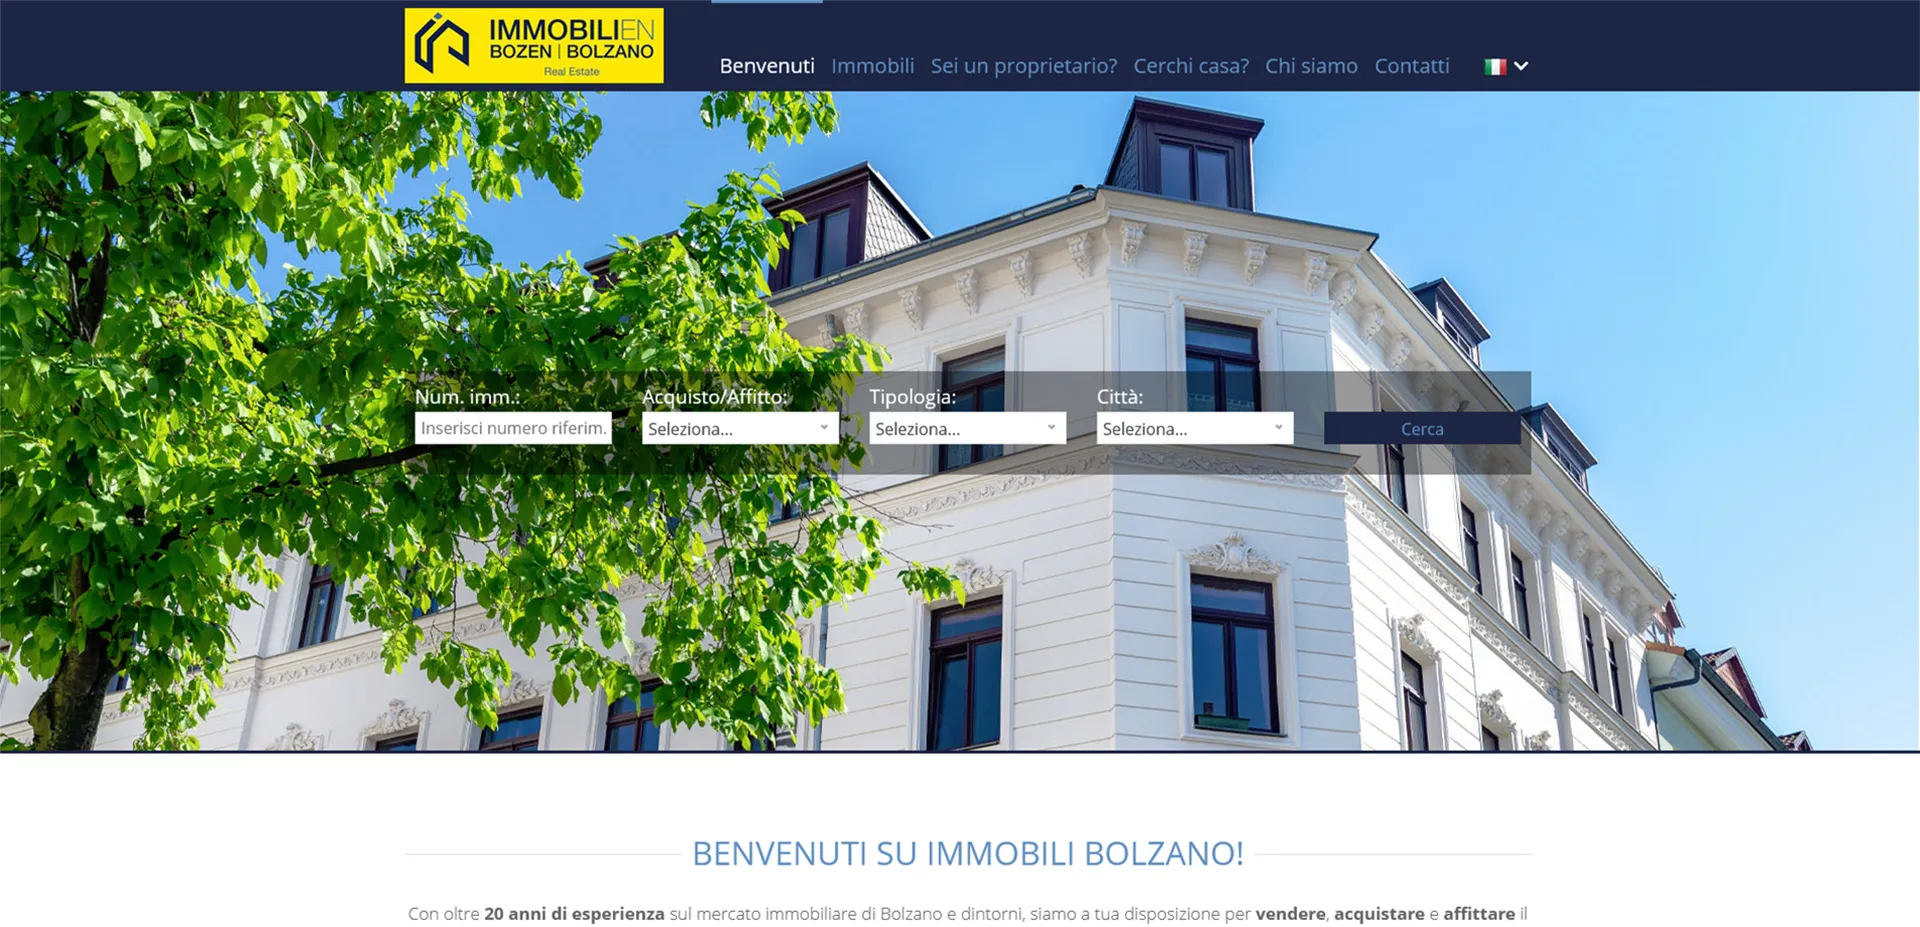 Immobili Bolzano Sito web